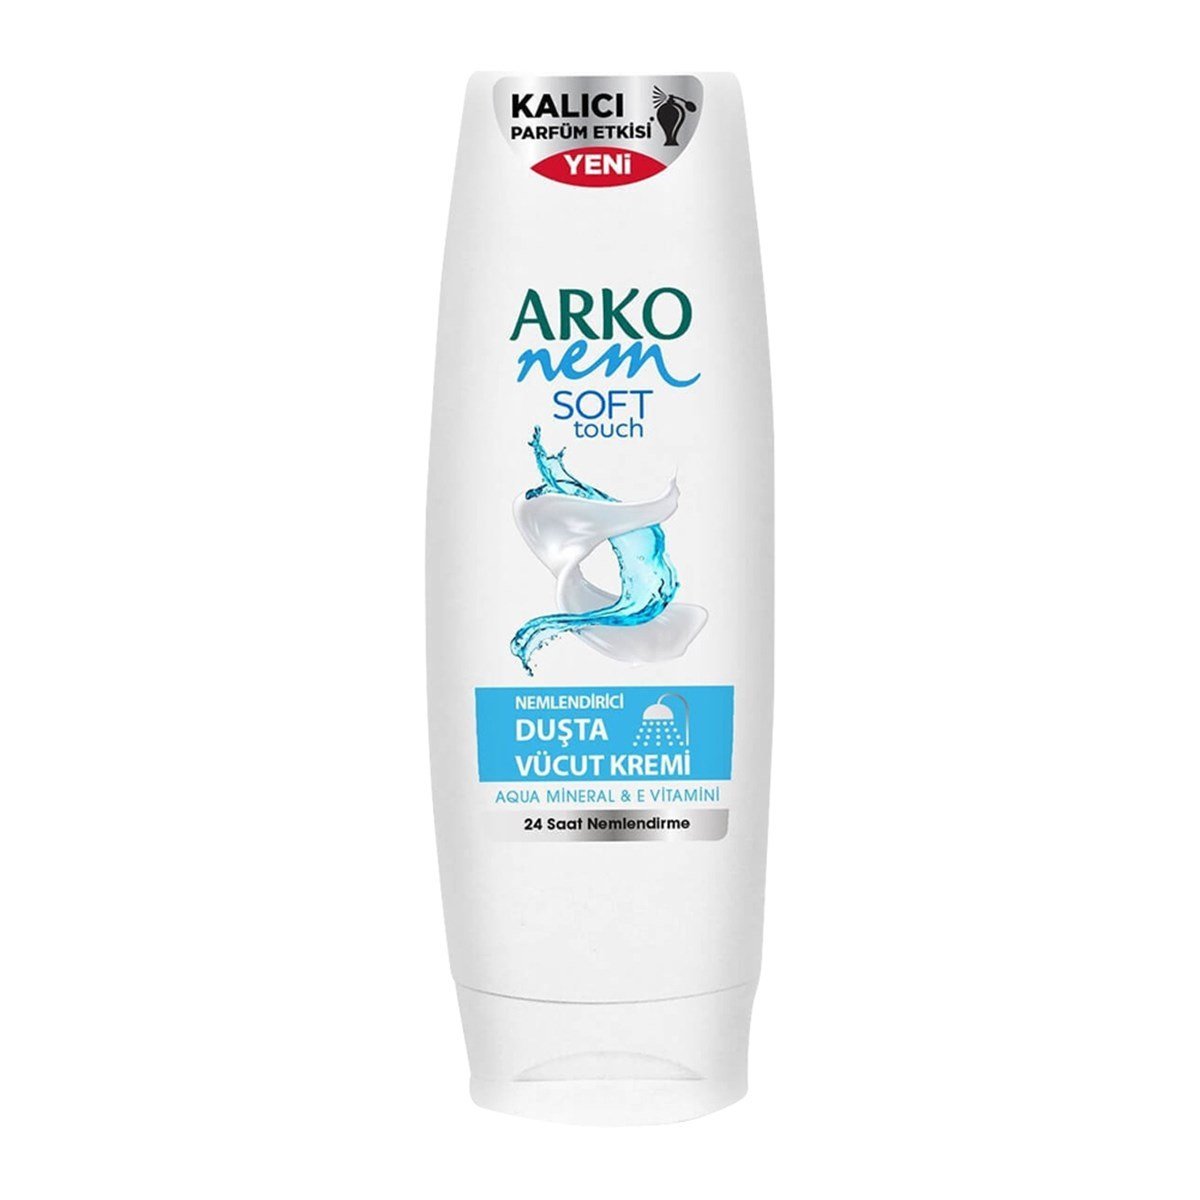 Arko Nem Soft Touch Nemlendirici Duşta Vücut Kremi 250ml - Platin